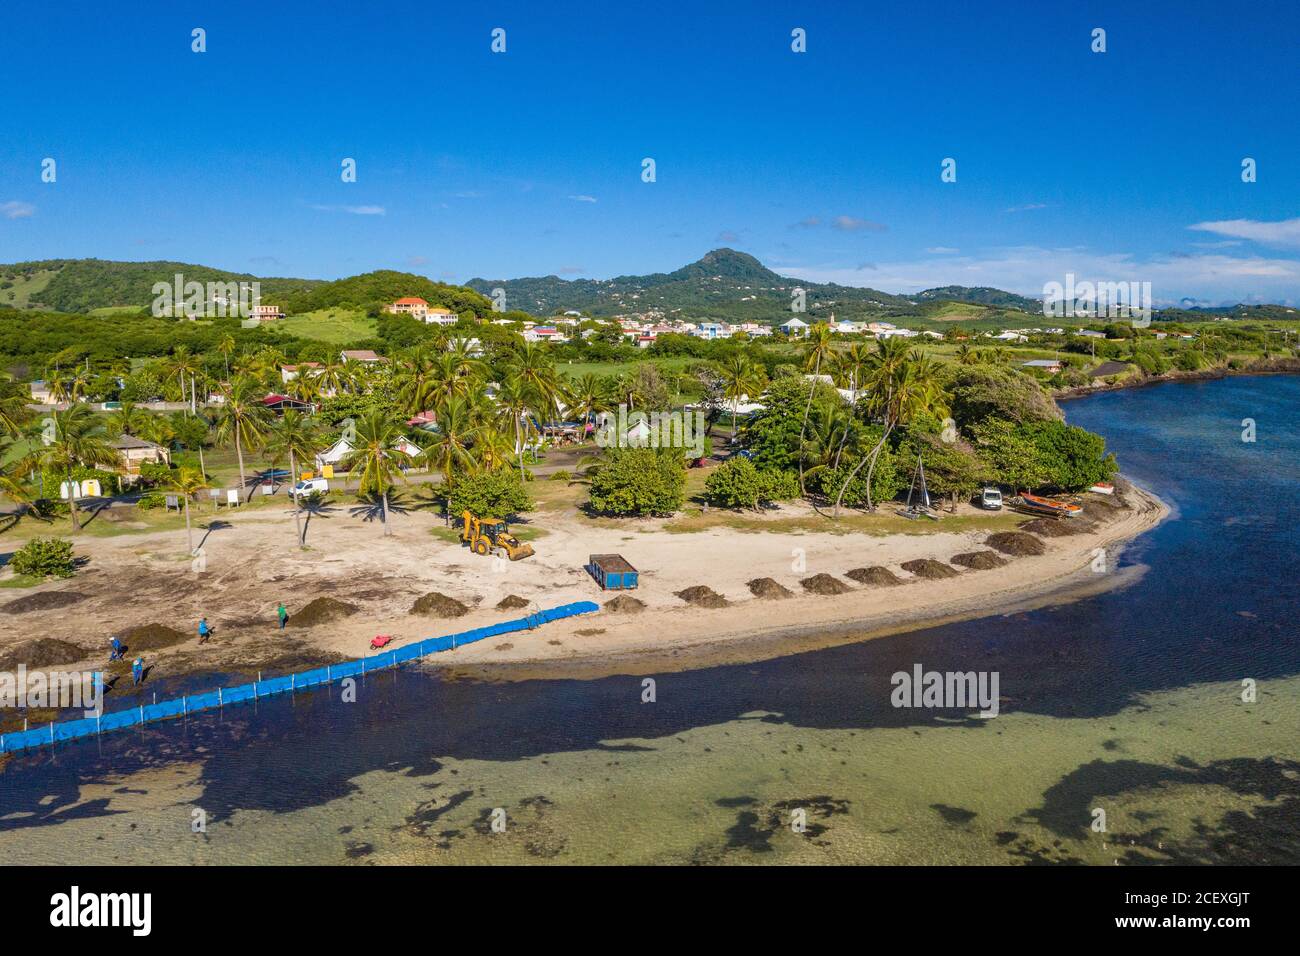 Karibische Strände sind wegen der Sargassum-Algen im Niedergang. Zäune werden im Meerinstalliert Dies ist der Fall hier in der Stadt Vauclin auf Martinique. Stockfoto